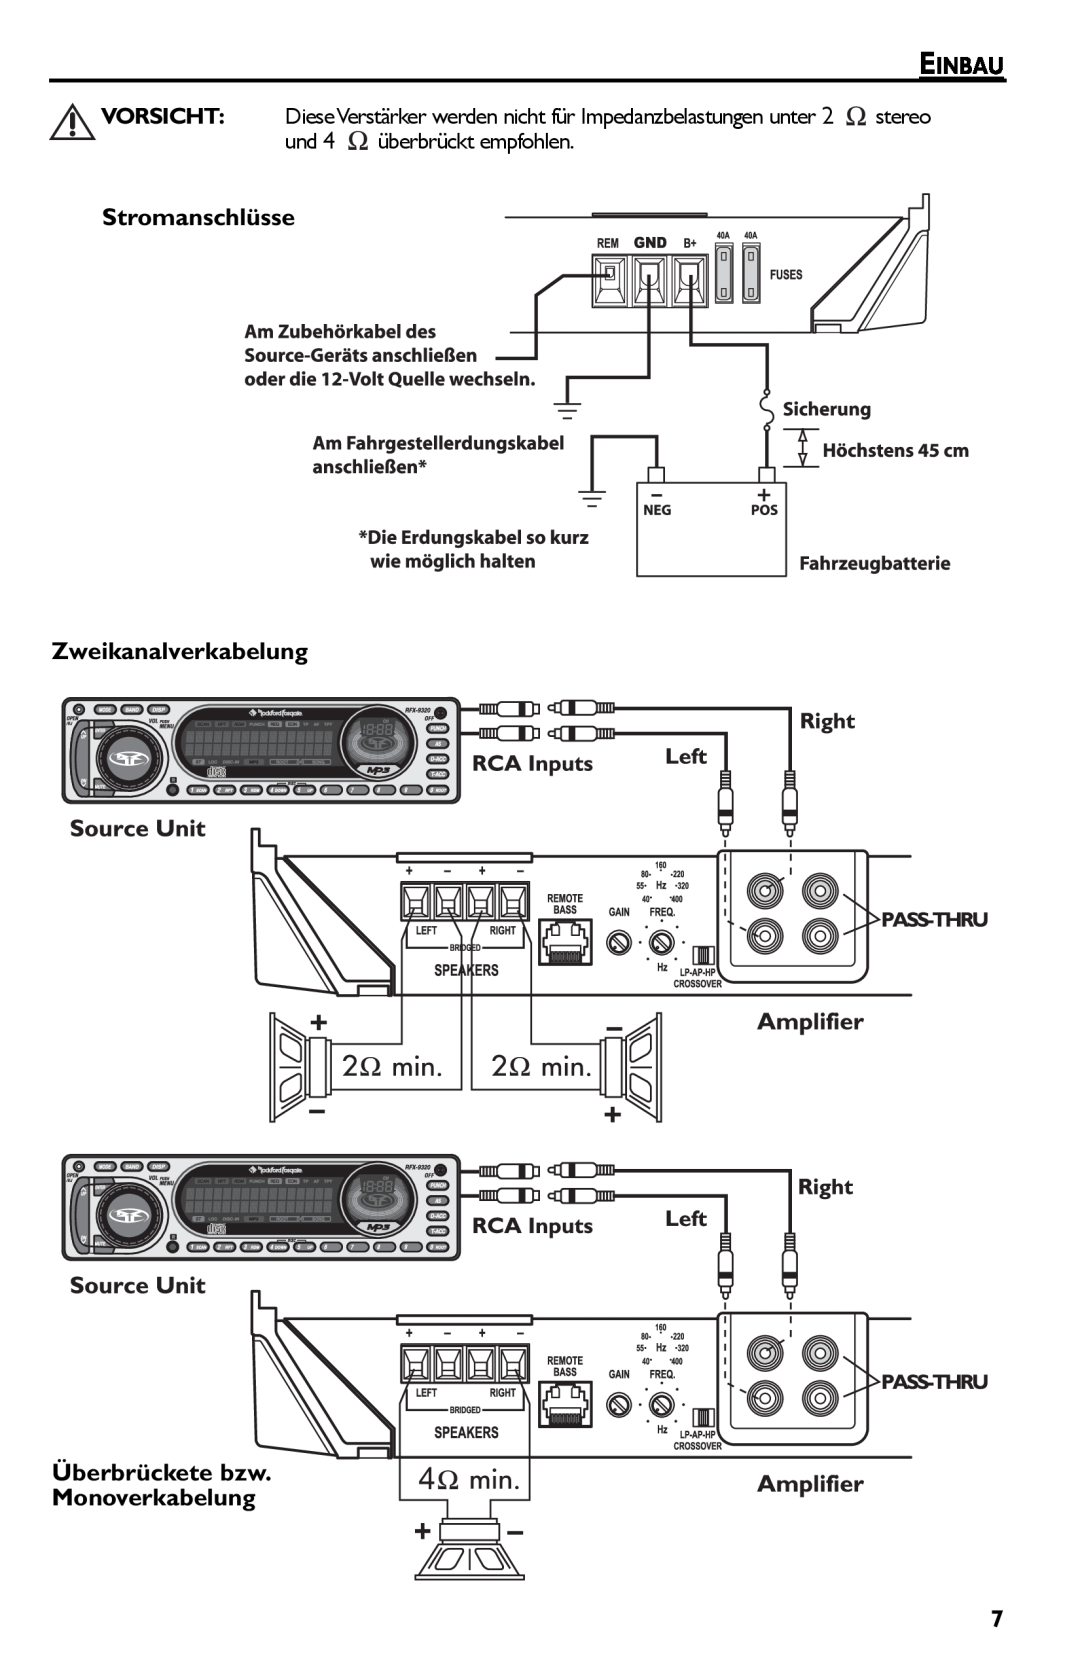 Rockford Fosgate Punch 45 manual Einbau, Stromanschlüsse Zweikanalverkabelung, Überbrückete bzw. Monoverkabelung 